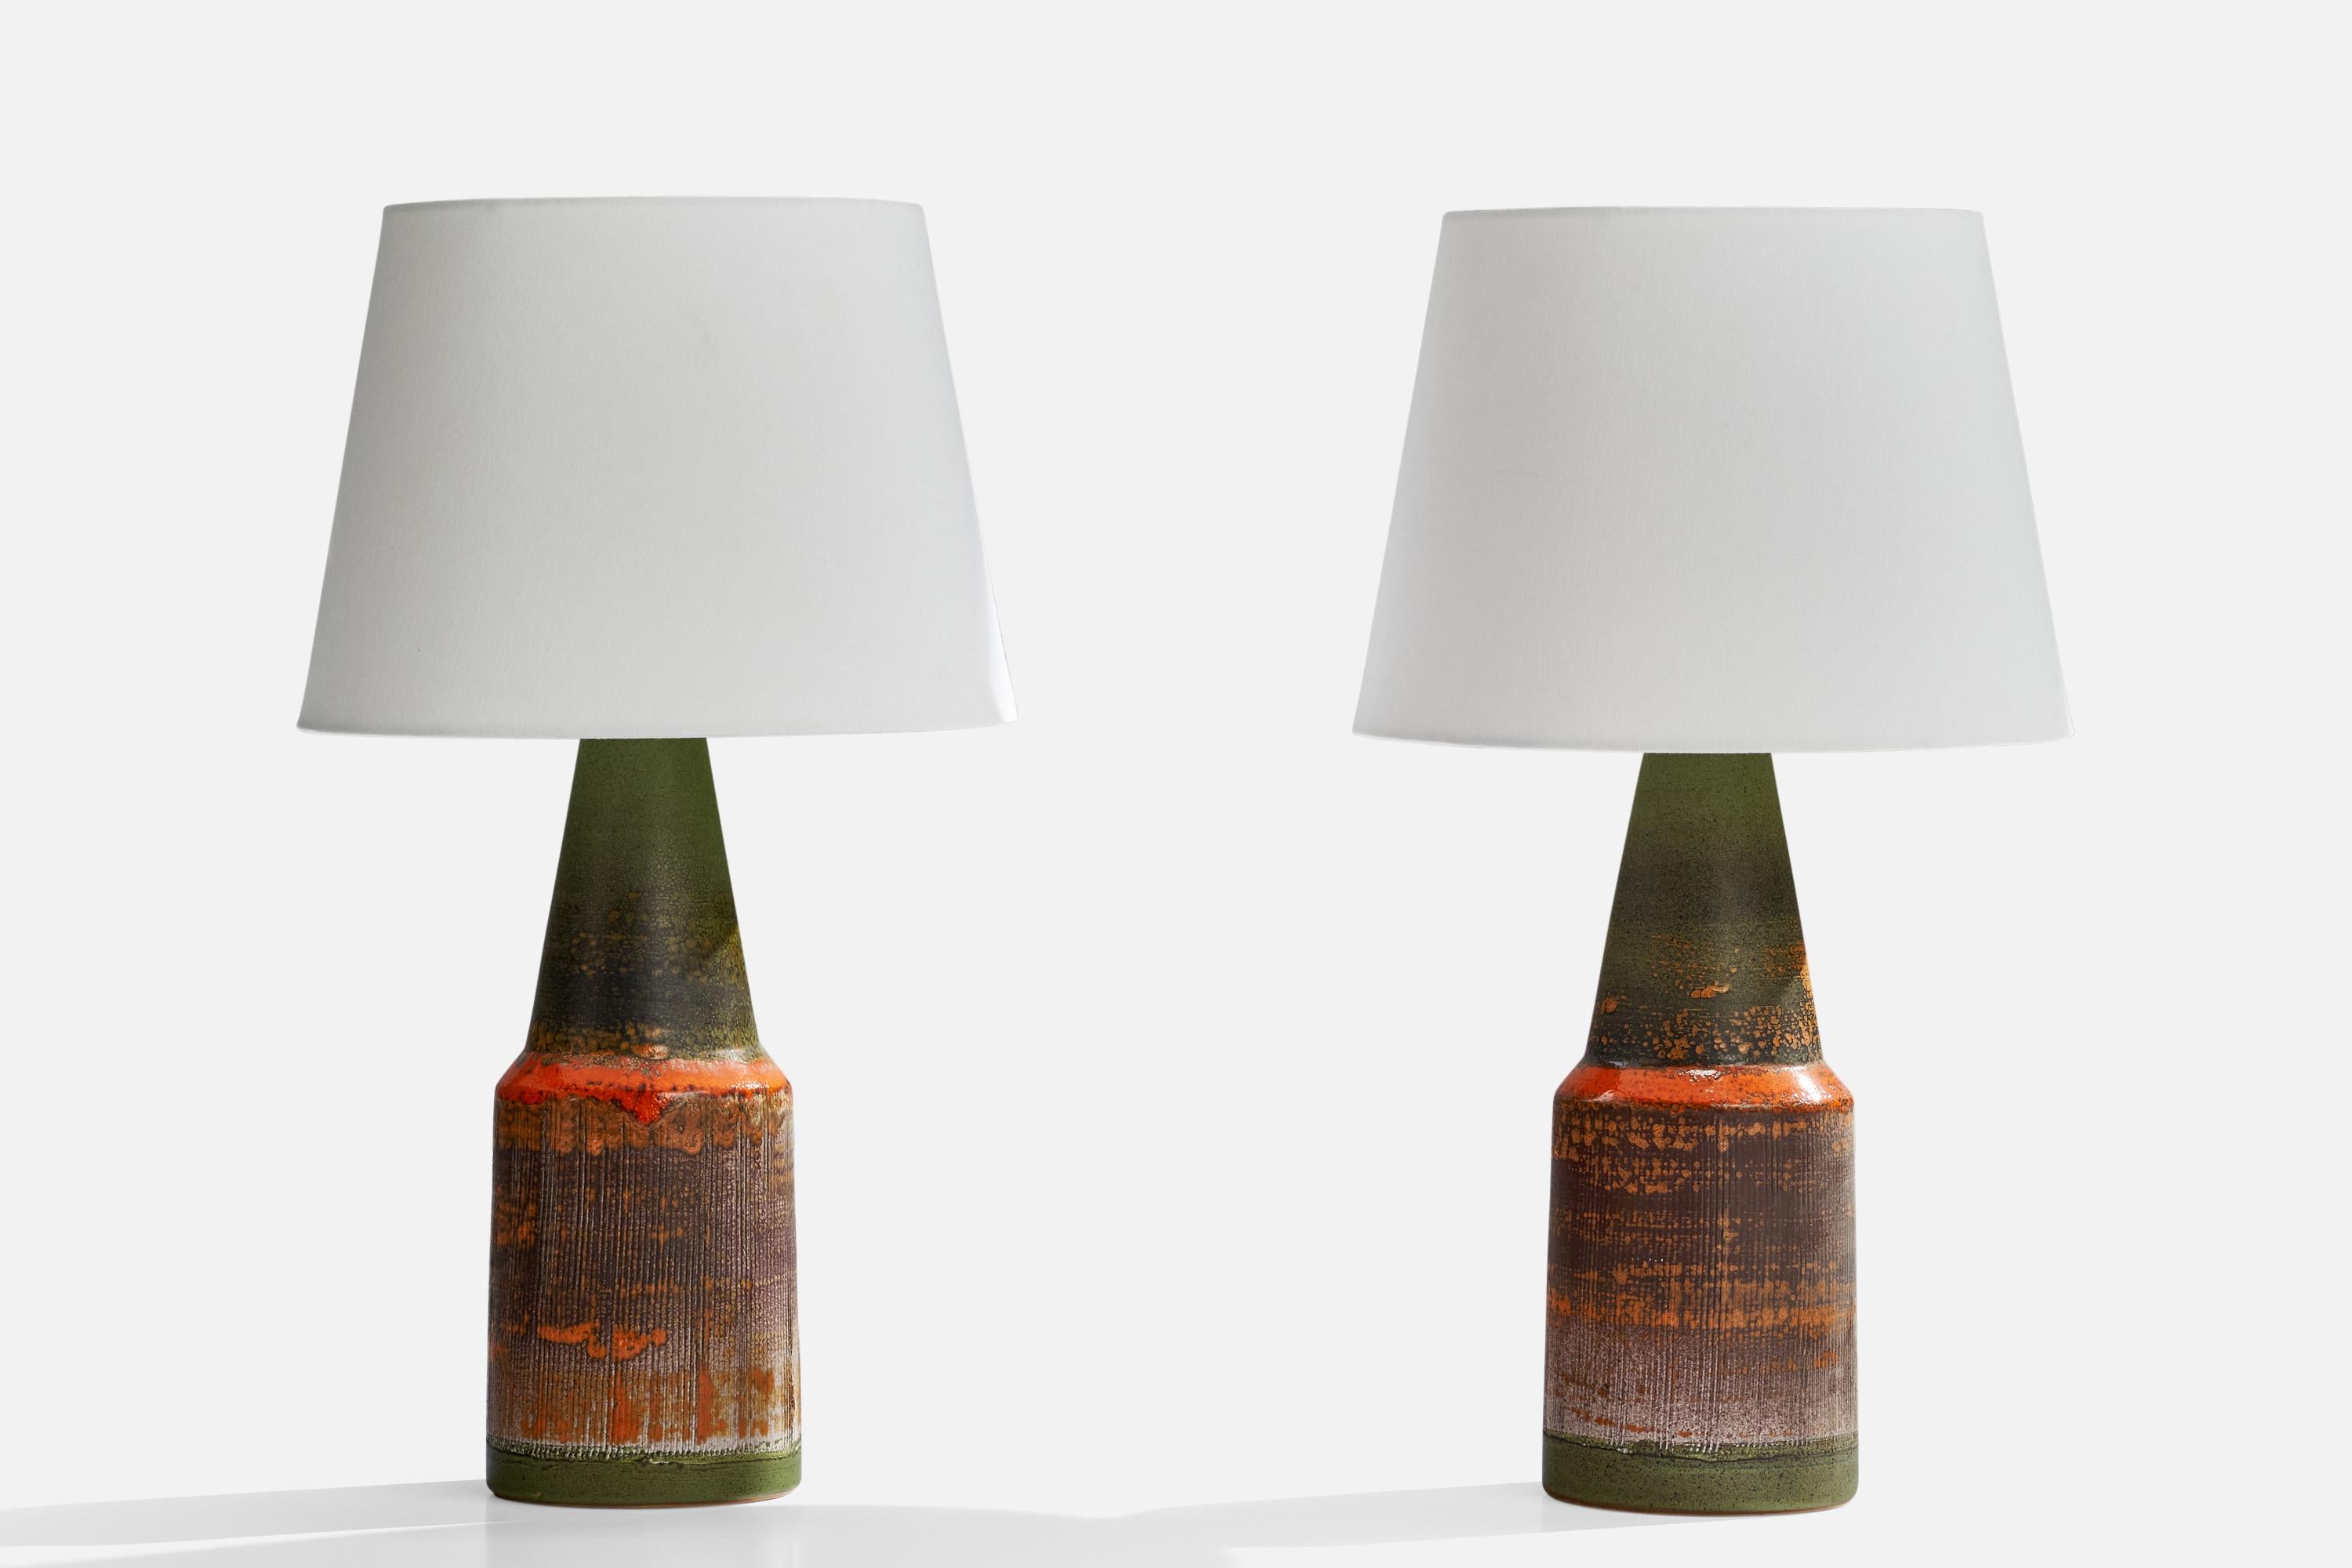 Ein Paar grün und orange glasierte Keramik-Tischlampen, entworfen und hergestellt von Tilgmans Keramik, Schweden, 1960er Jahre.

Abmessungen der Lampe (Zoll): 16,5